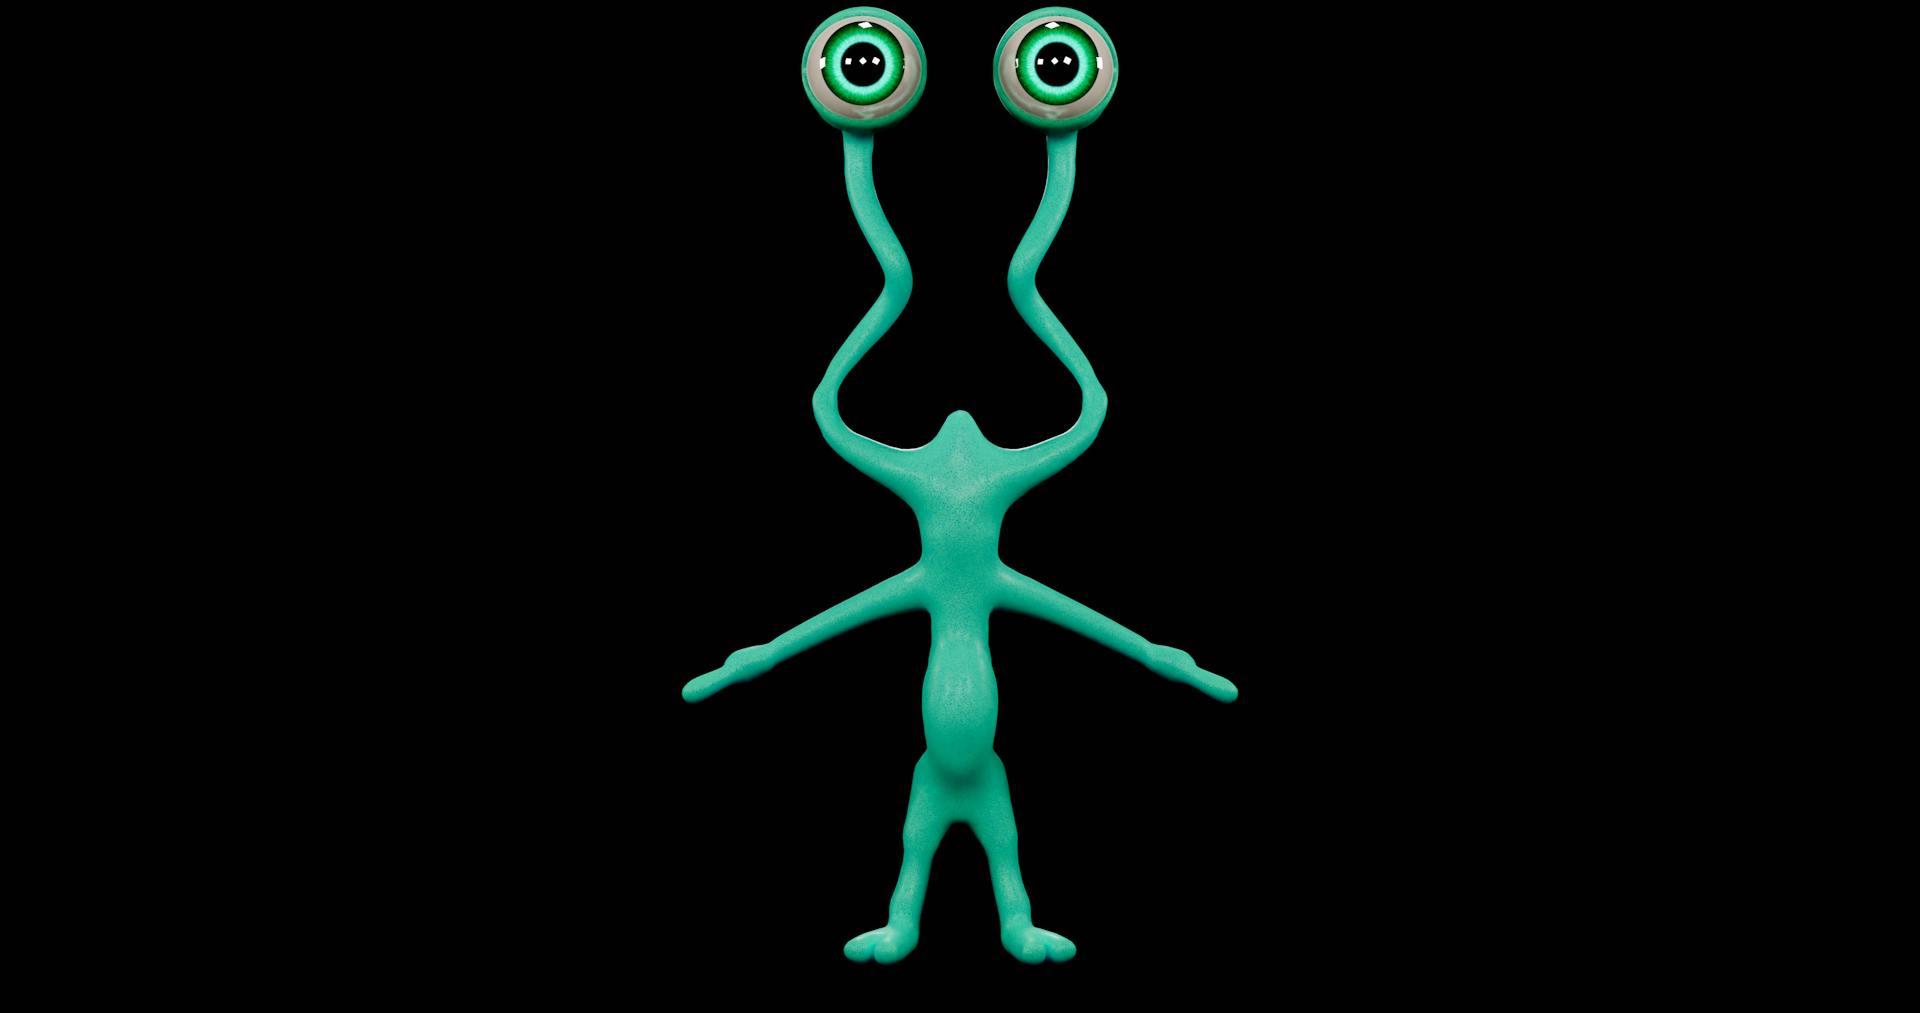 Mike the alien - LoArt & Dev